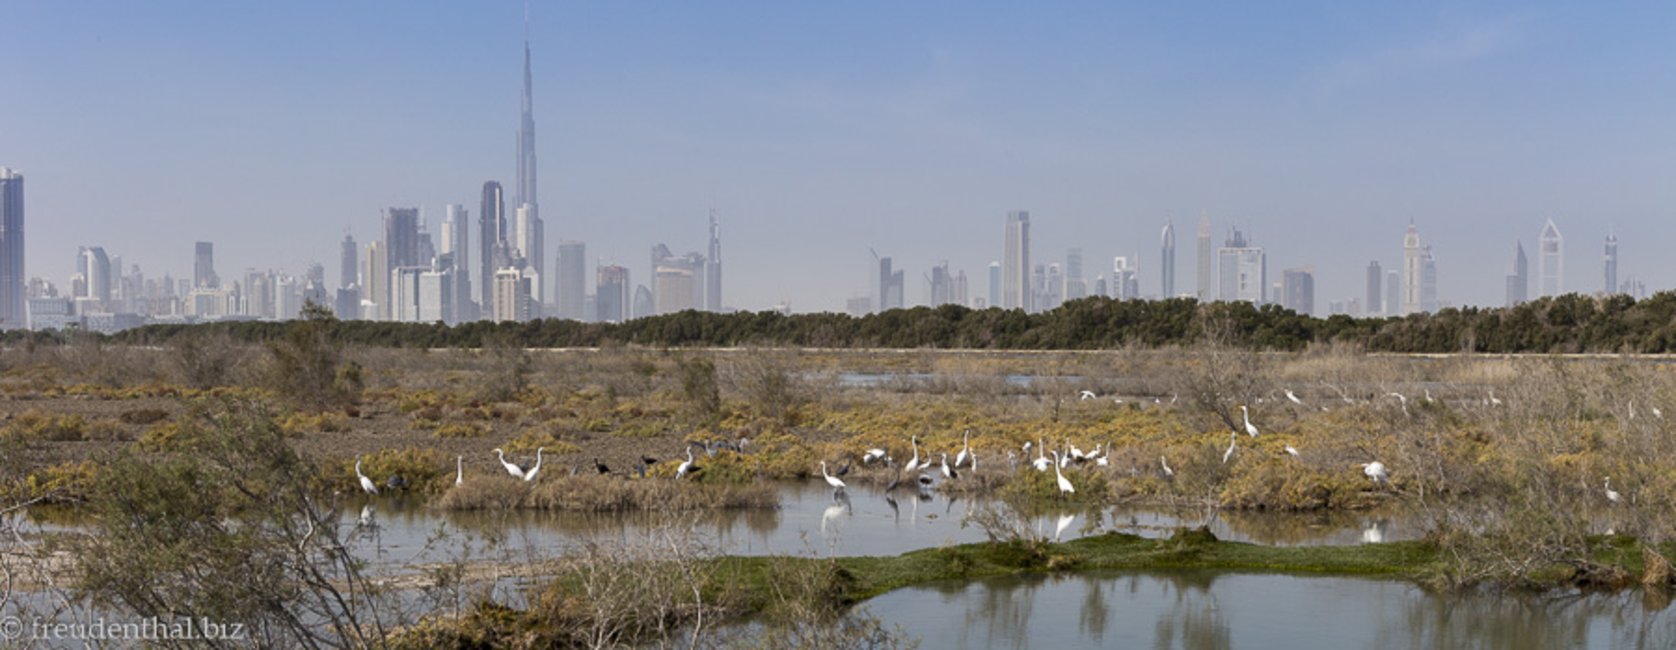 Dubai - die Glitzermetropole im staubigem Dunst